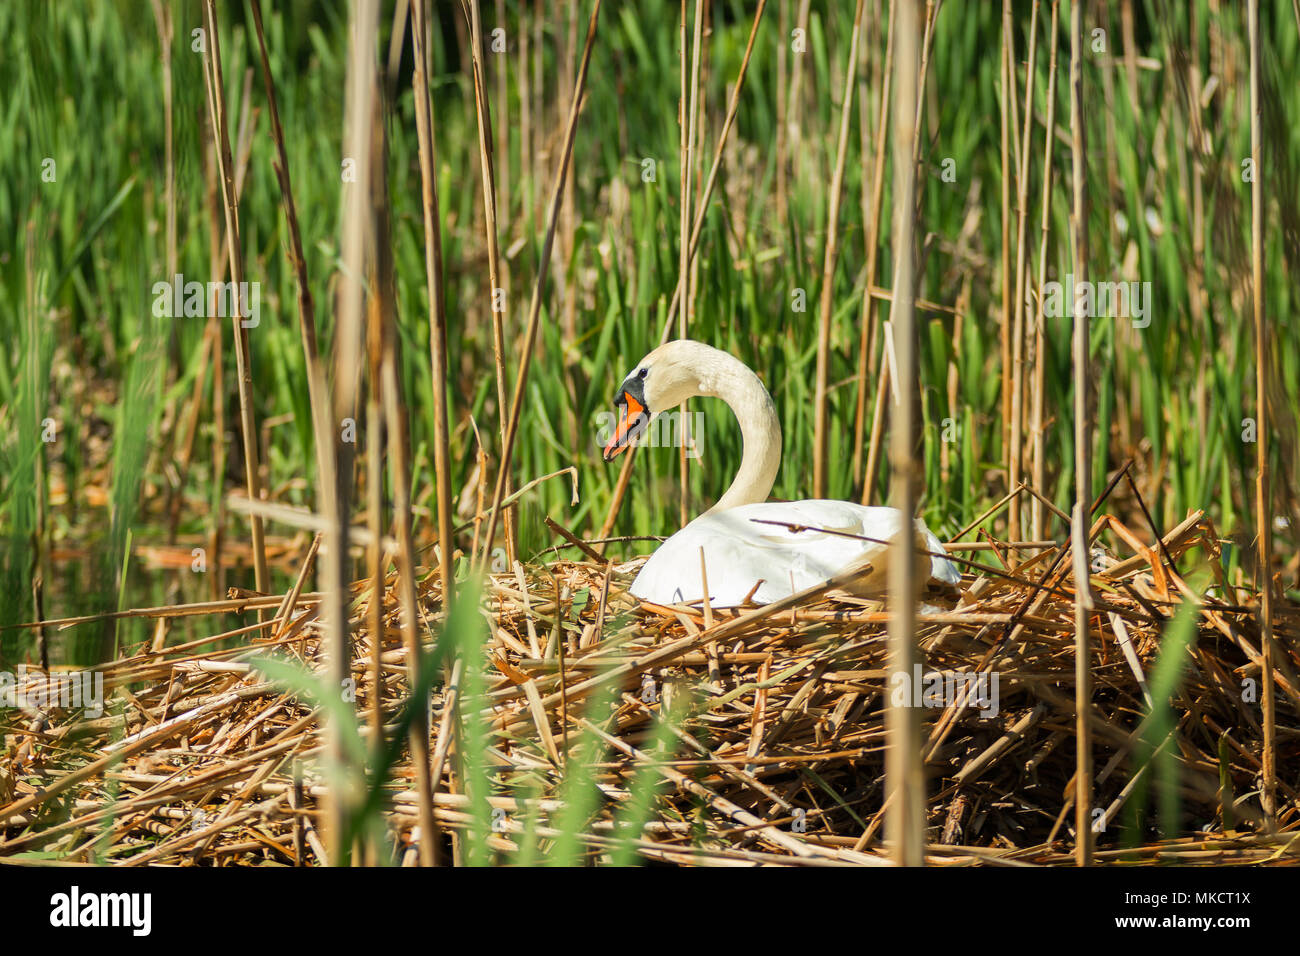 Un grand cygne blanc assis dans un nid, un nid avec swan construit sur la surface d'un lac entouré de roseaux. Banque D'Images